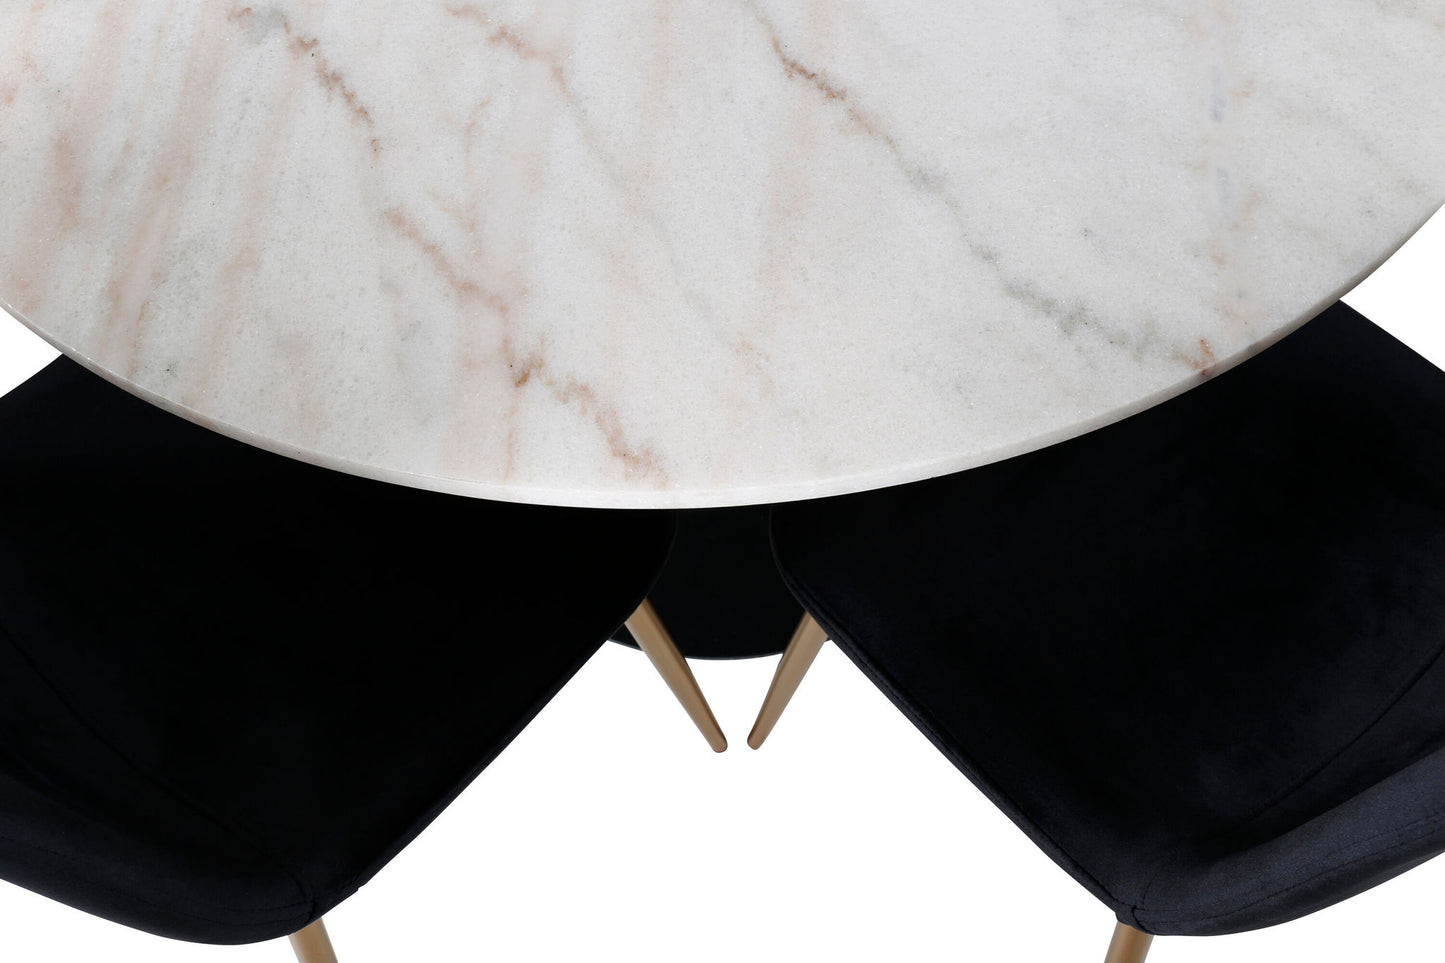 Estelle - Spisebord, rund 106cm Hvid marble / Sorte ben - Polar Stol - Sort velour / Mat messing ben